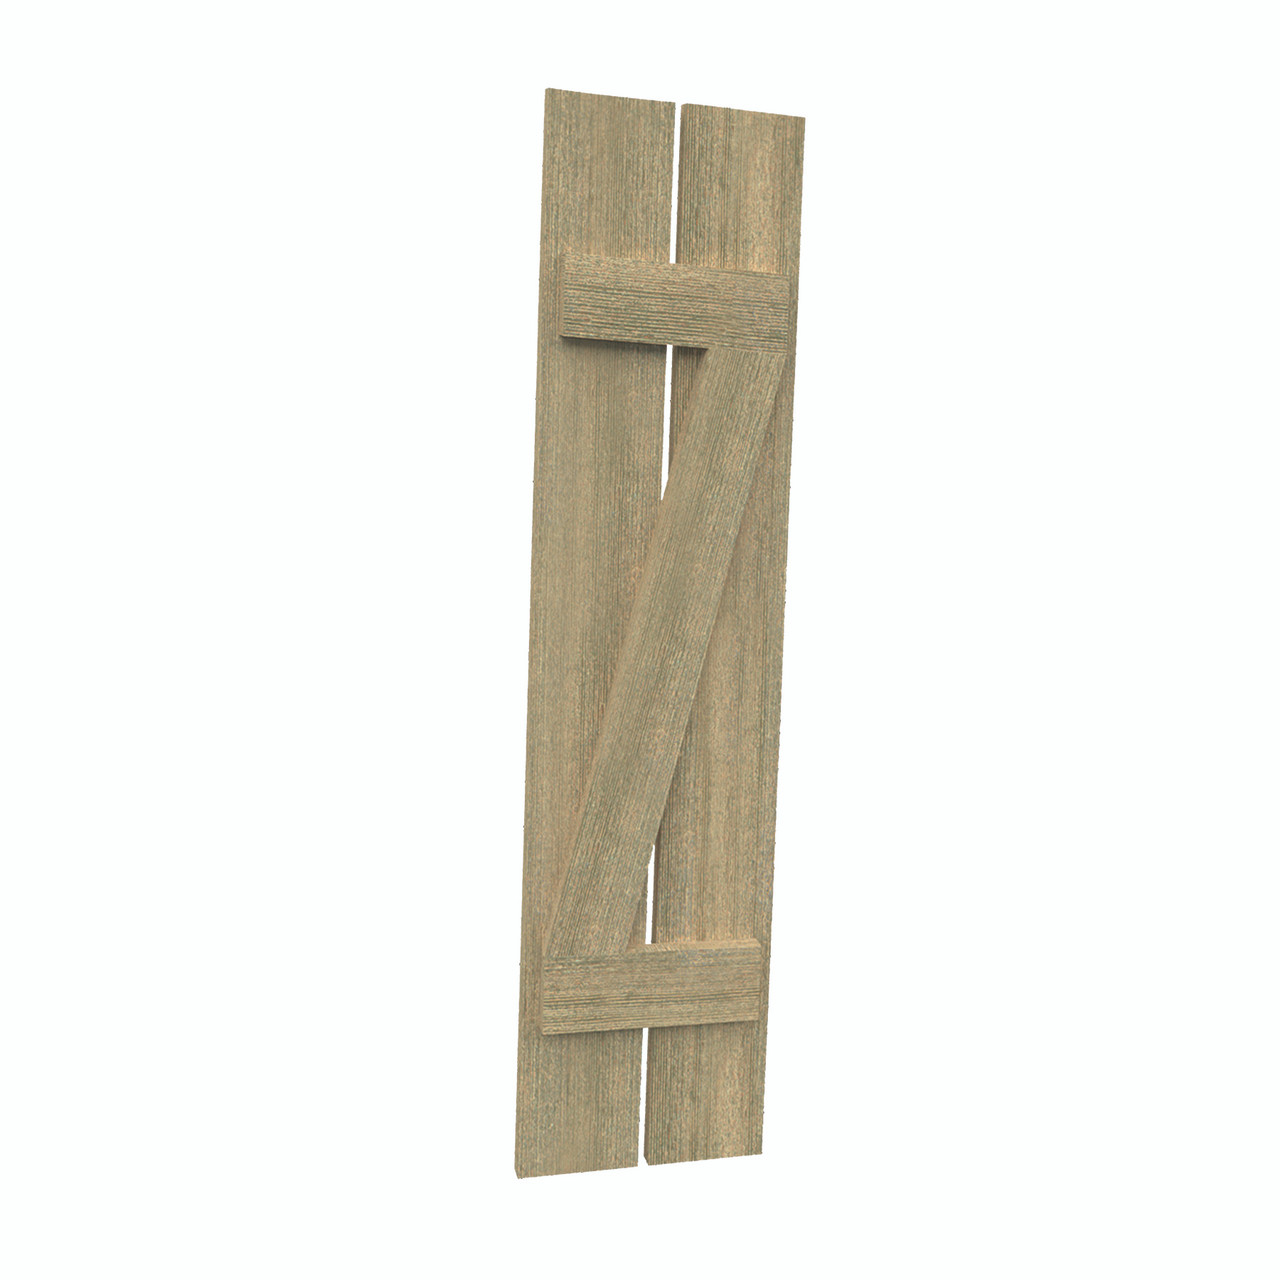 12 inch by 30 inch Plank Shutter with 2-Plank, Z-Batten